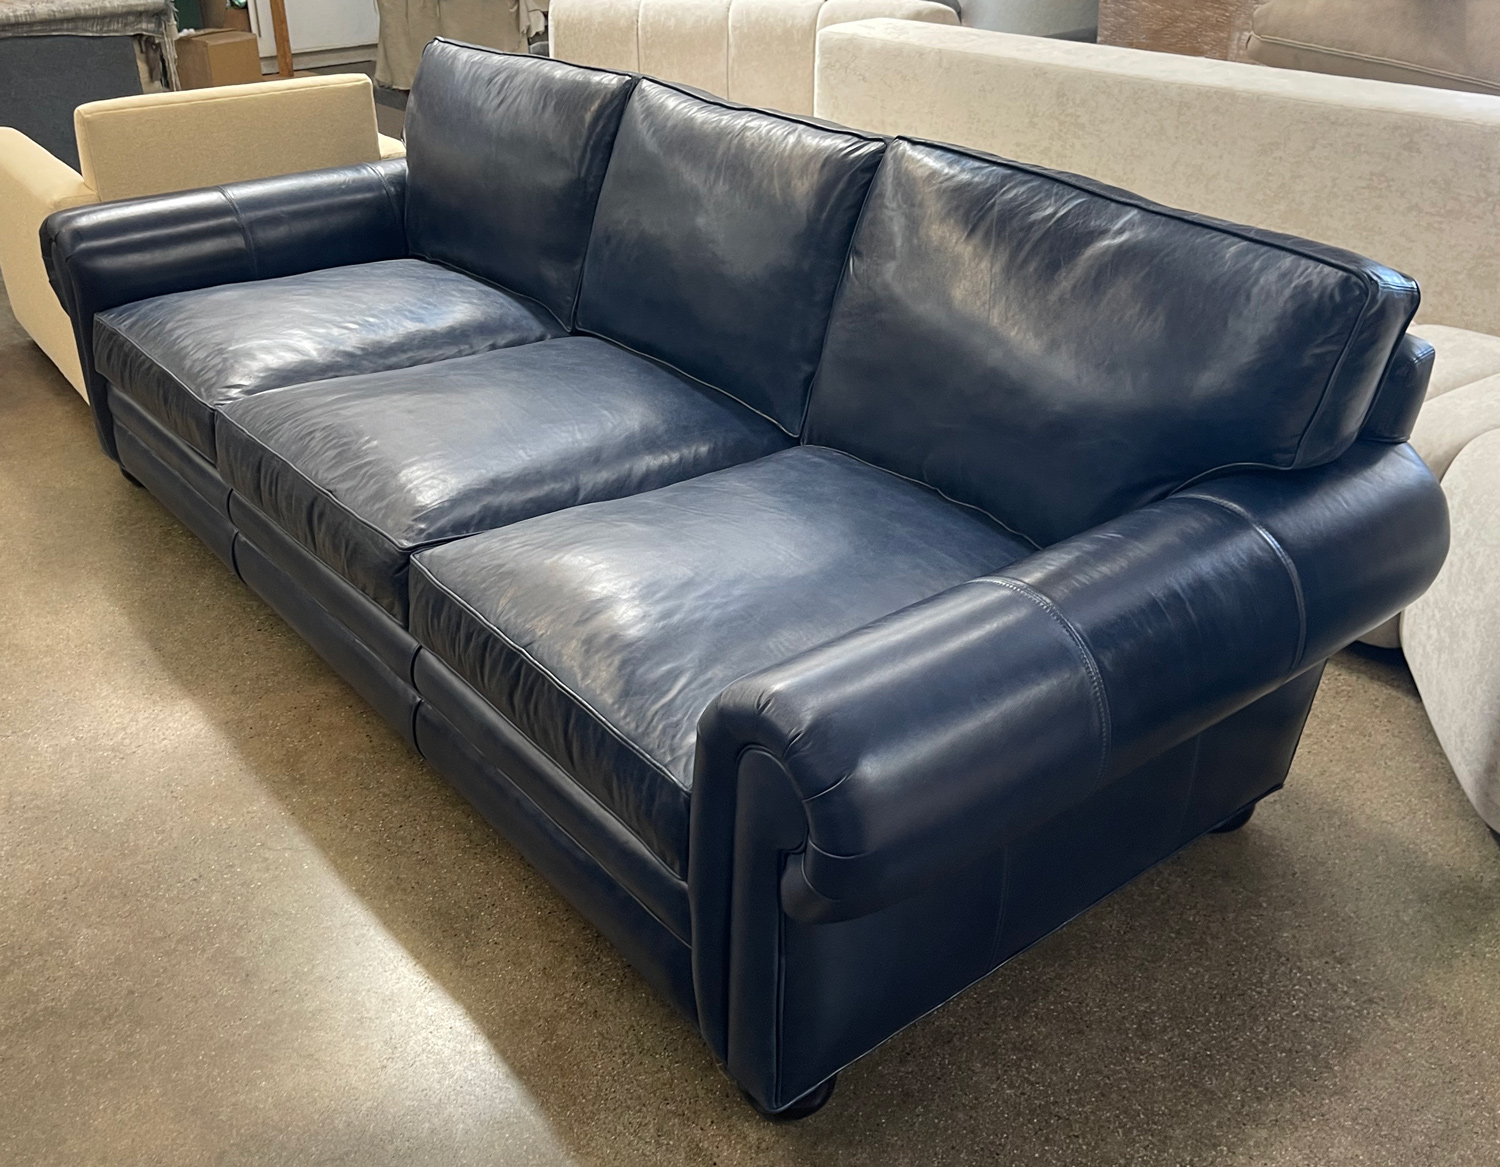 Langston Sofa in Mont Blanc Larkspur Blue Leather - 108"L x 48"D